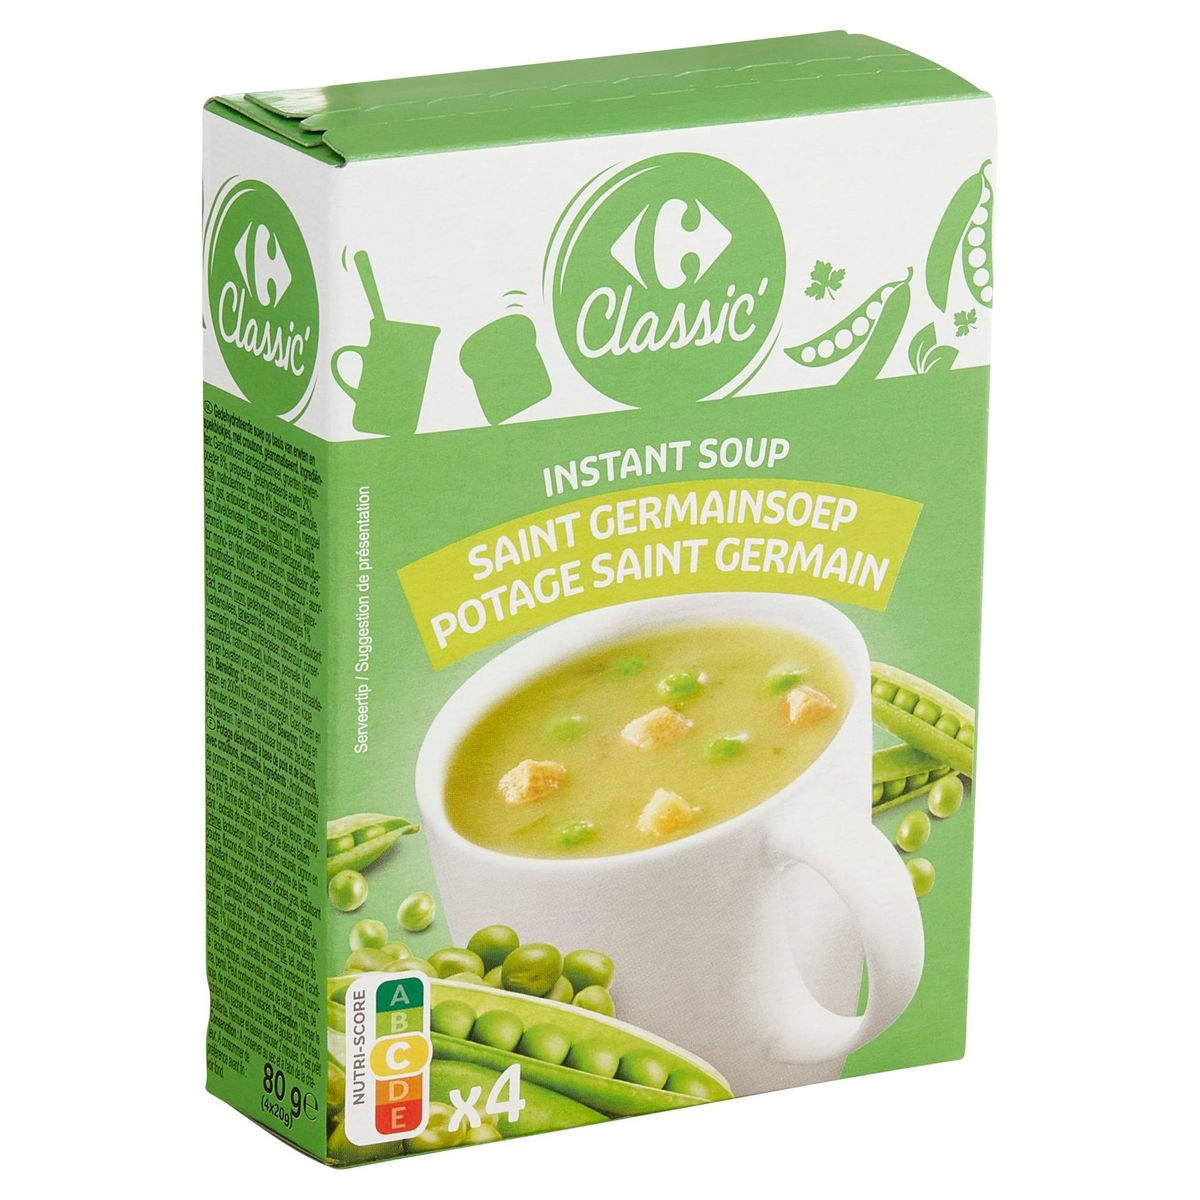 Carrefour Classic' Instant Soup Saint Germainsoep 4 x 20 g